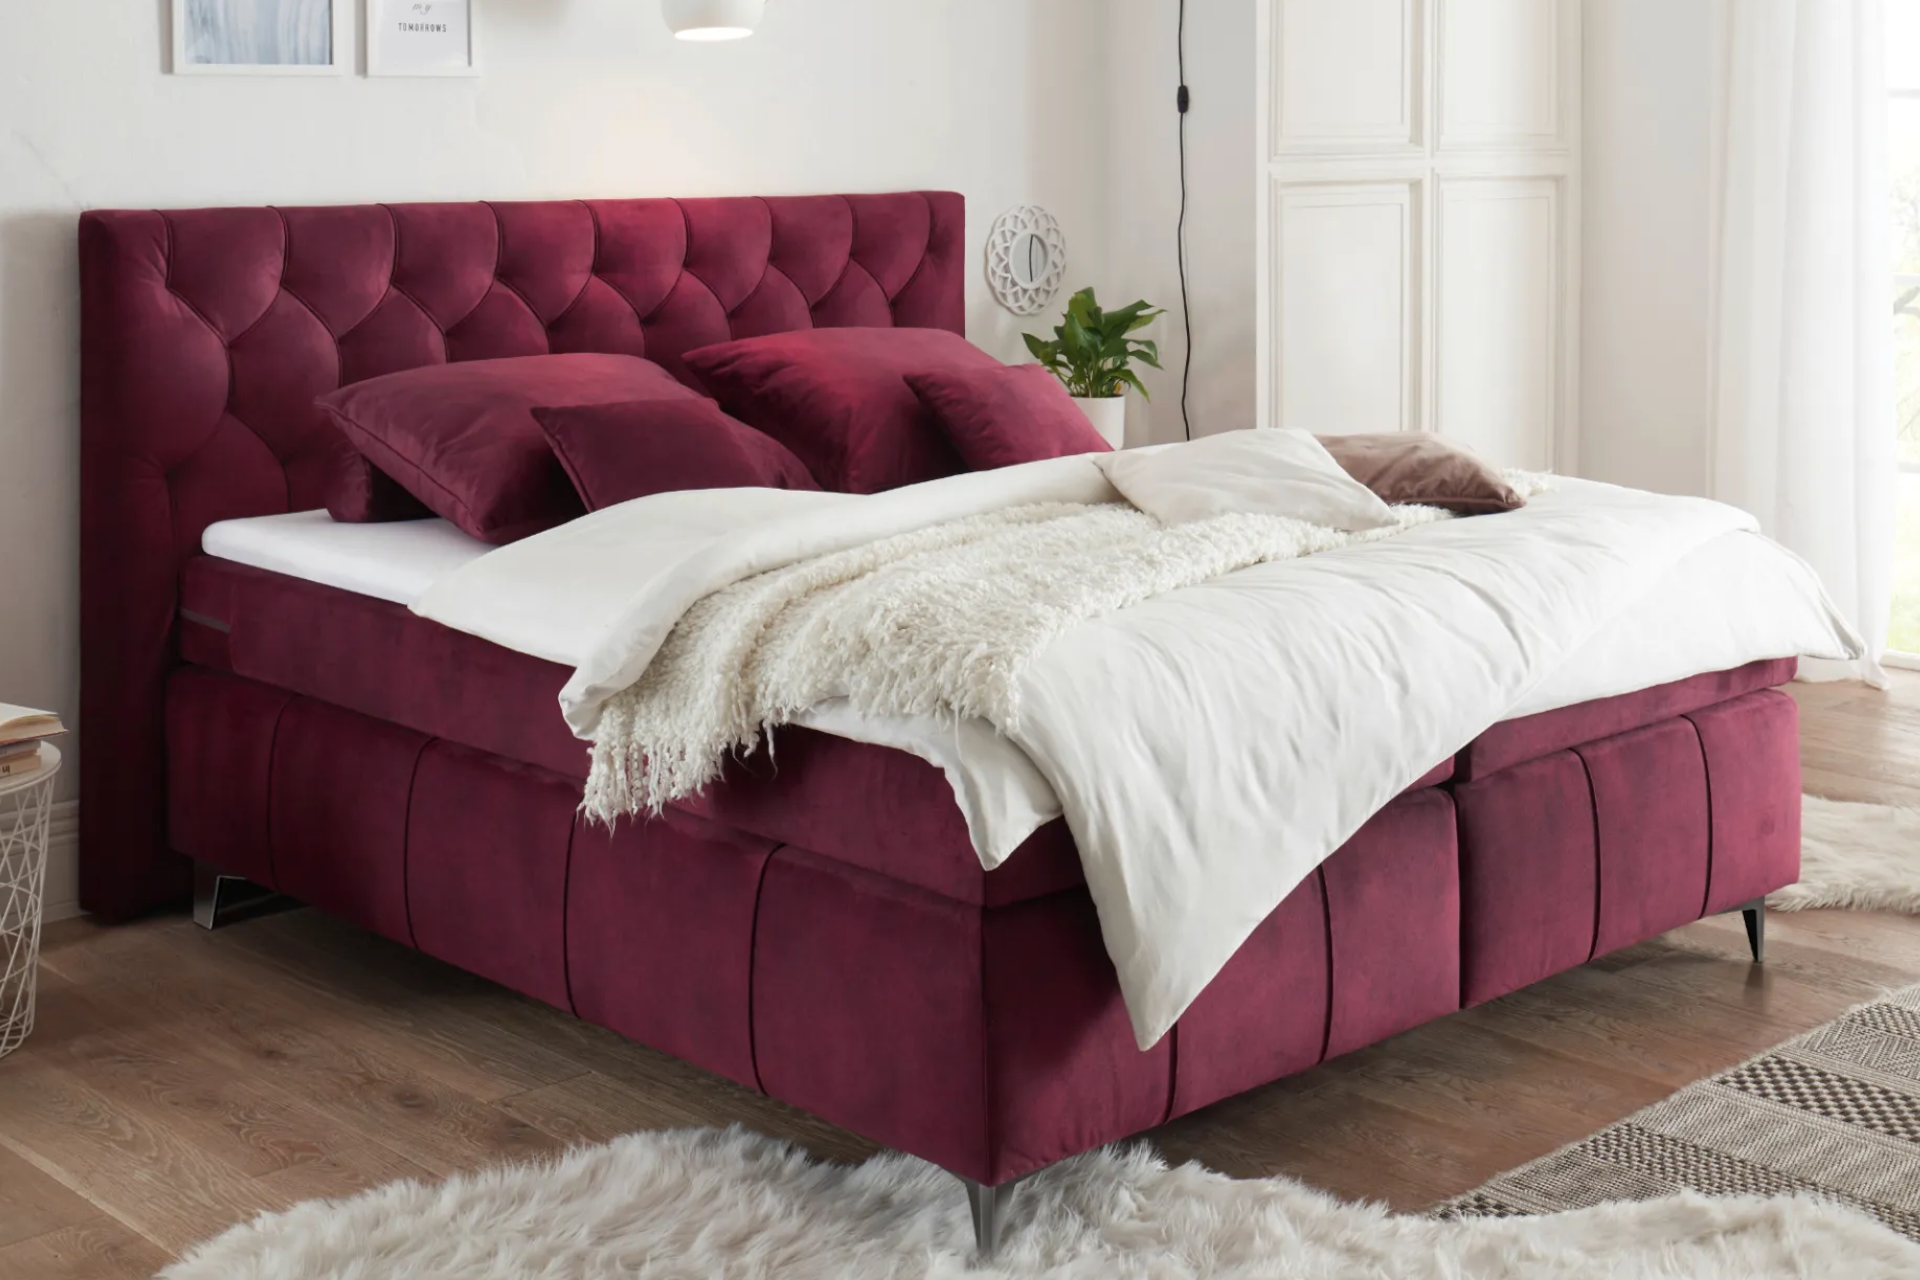 Čalouněná boxspringová postel ve vínovém odstínu